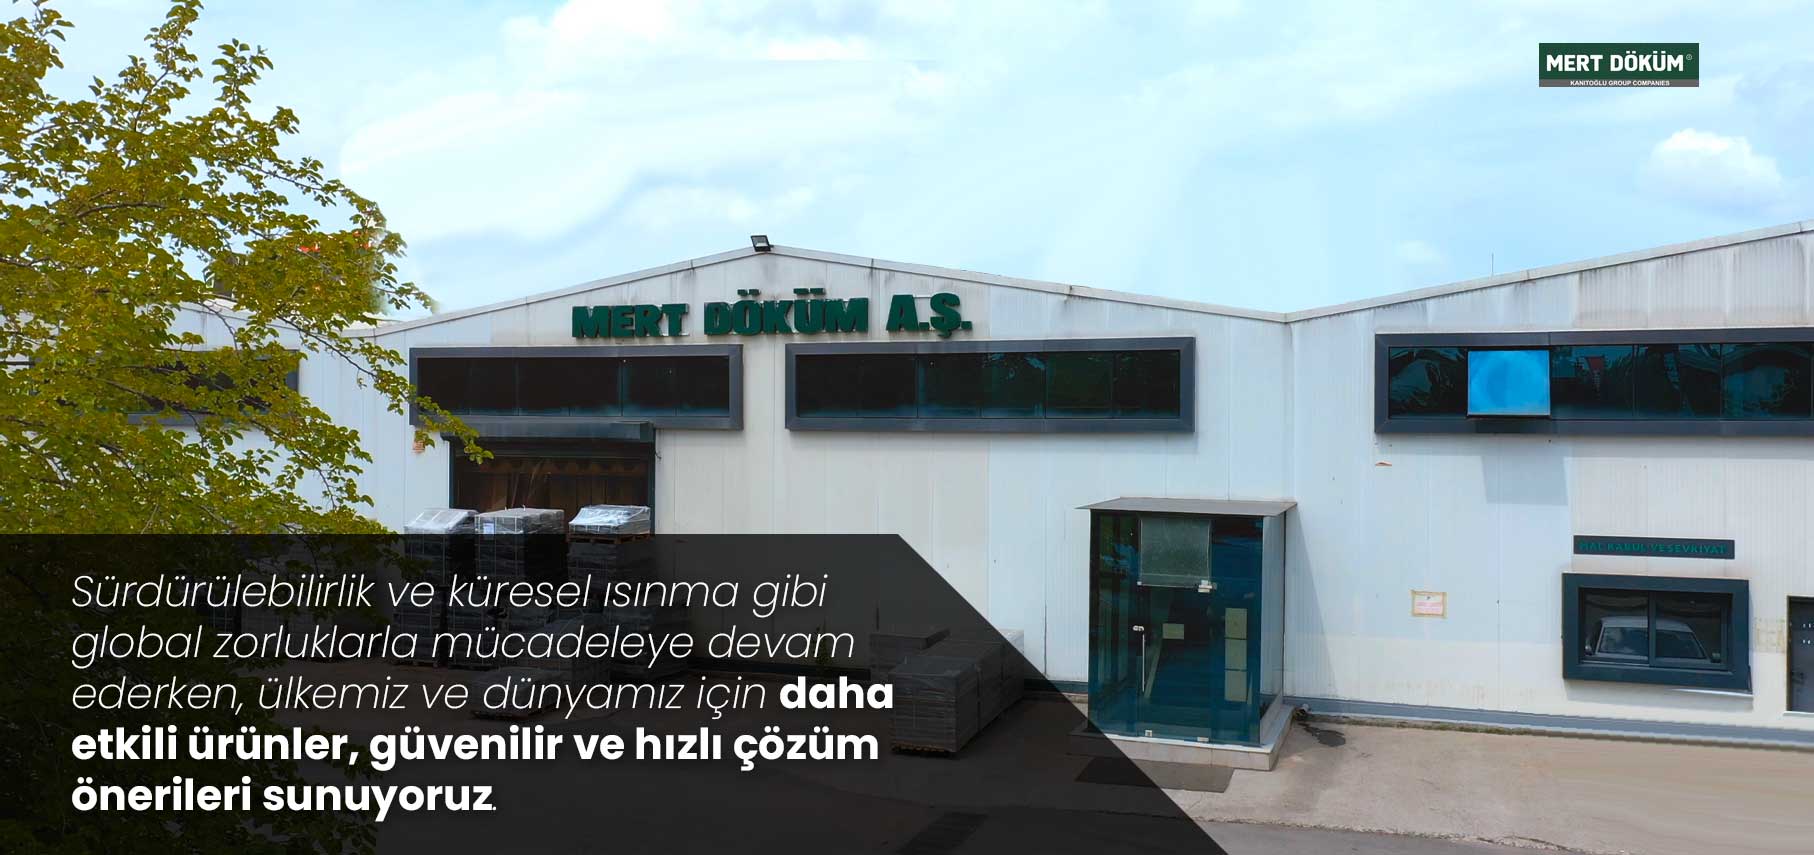 MERT DÖKÜM Factory Istanbul